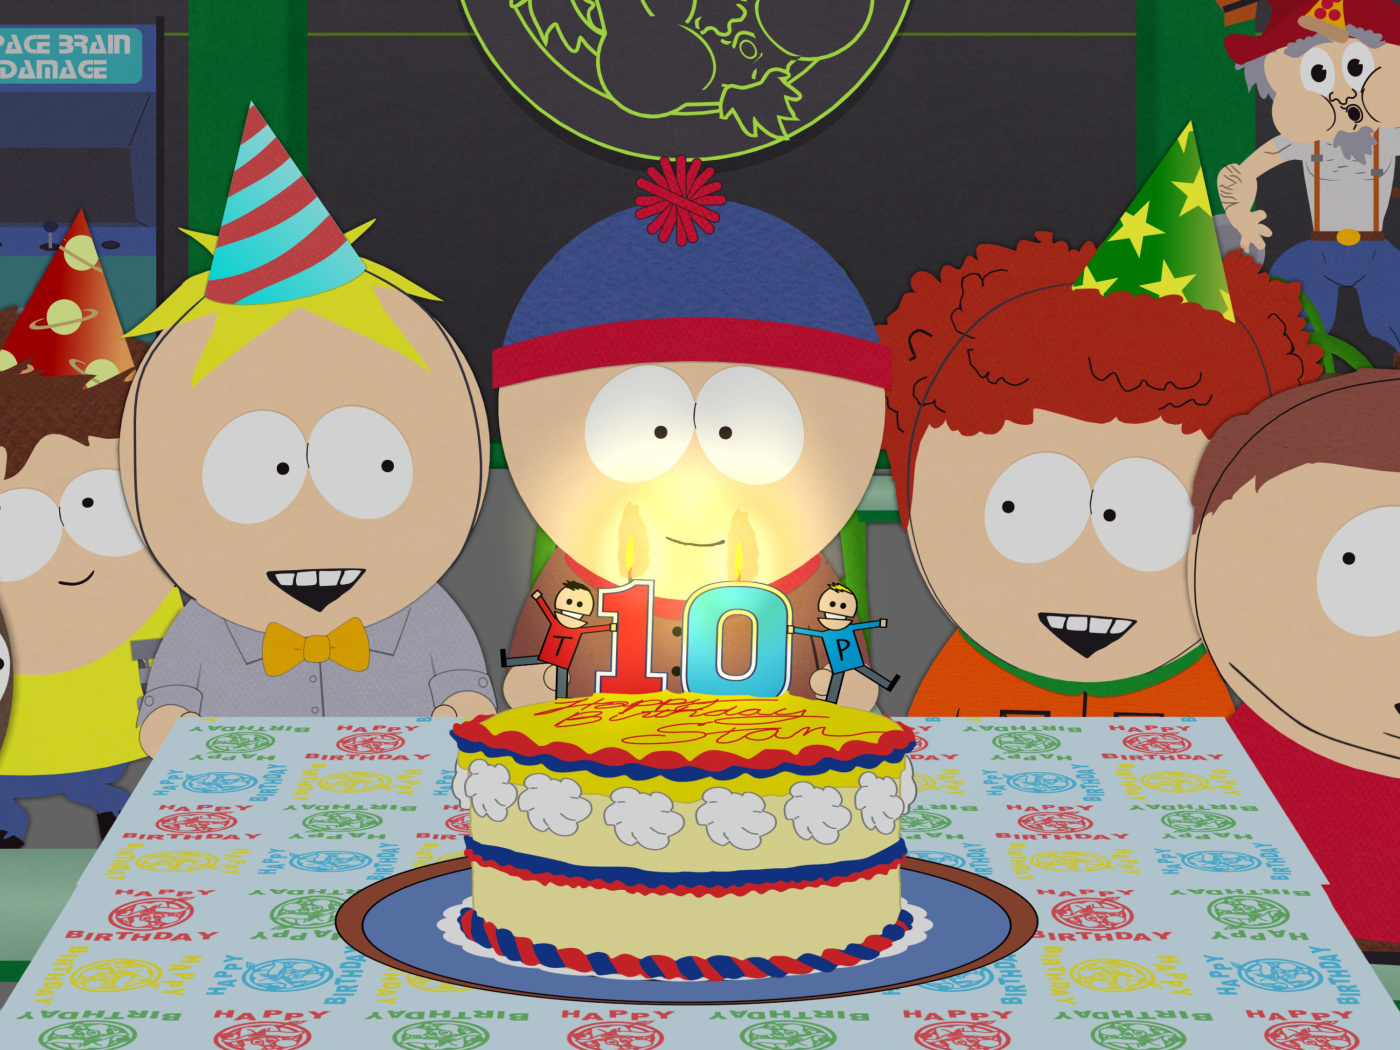 Das South Park Season 15 Stans Party Wallpaper 1400x1050